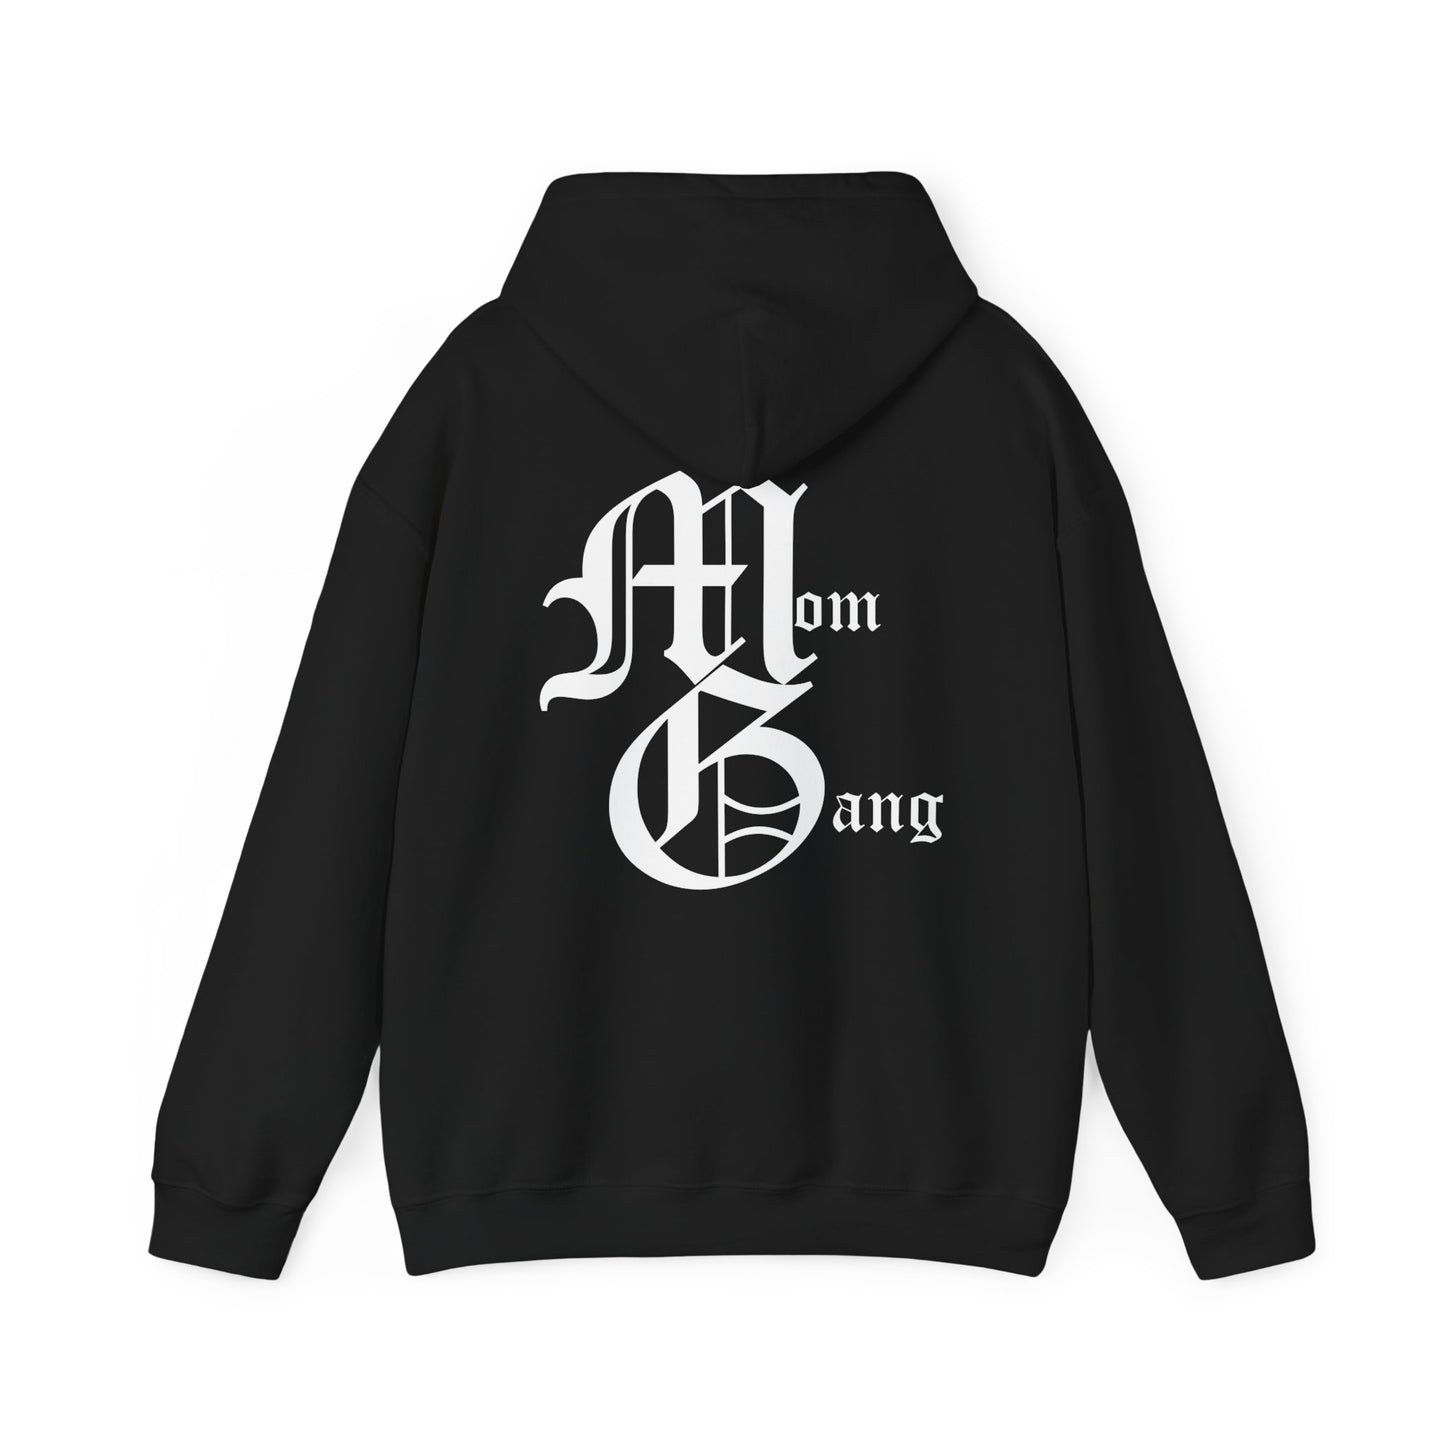 MG hoodie